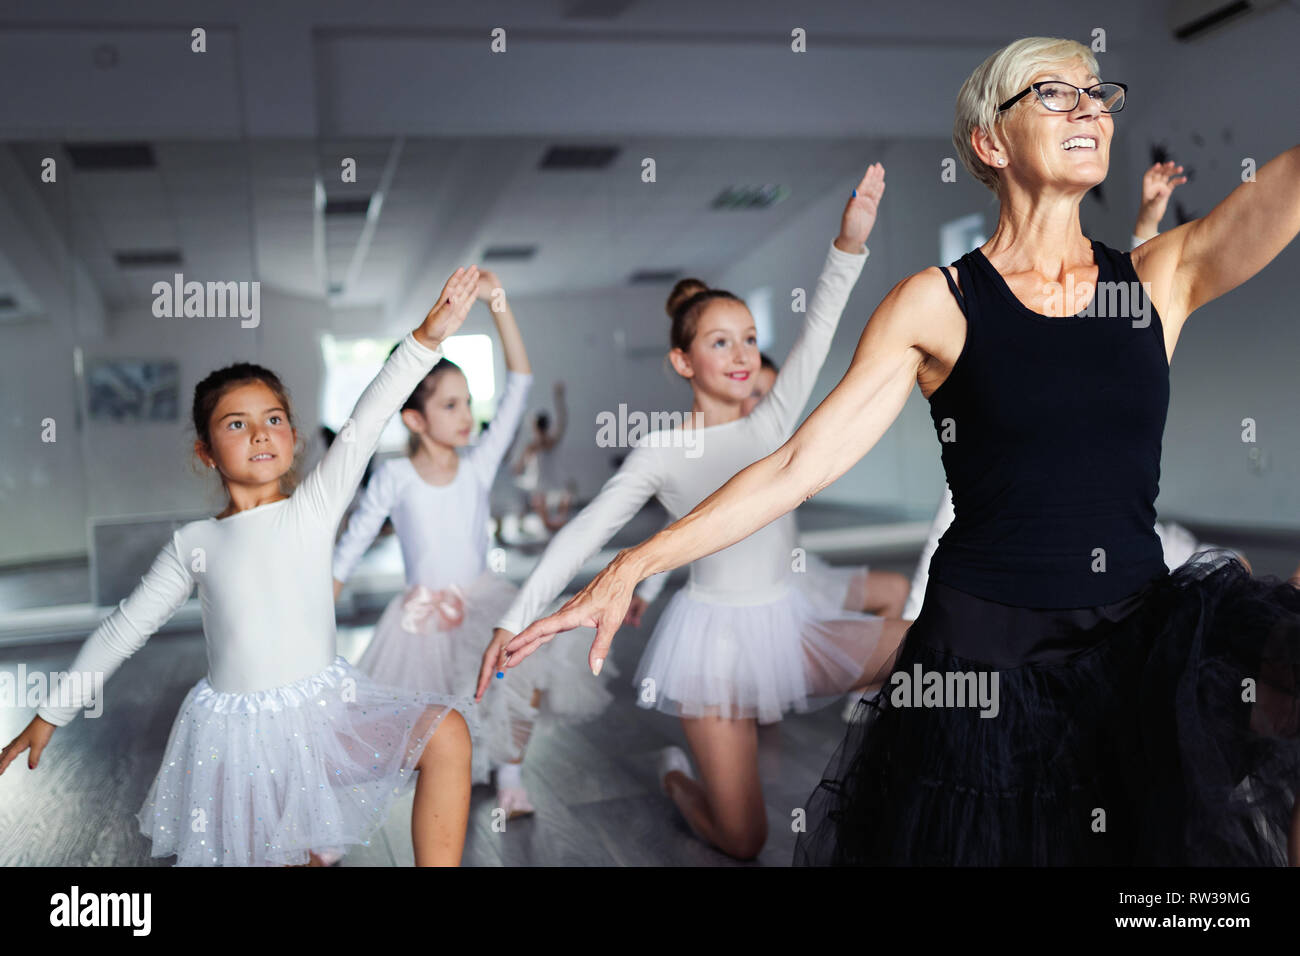 Ballet teacher and students ballerinas exercising in dance class in school Stock Photo